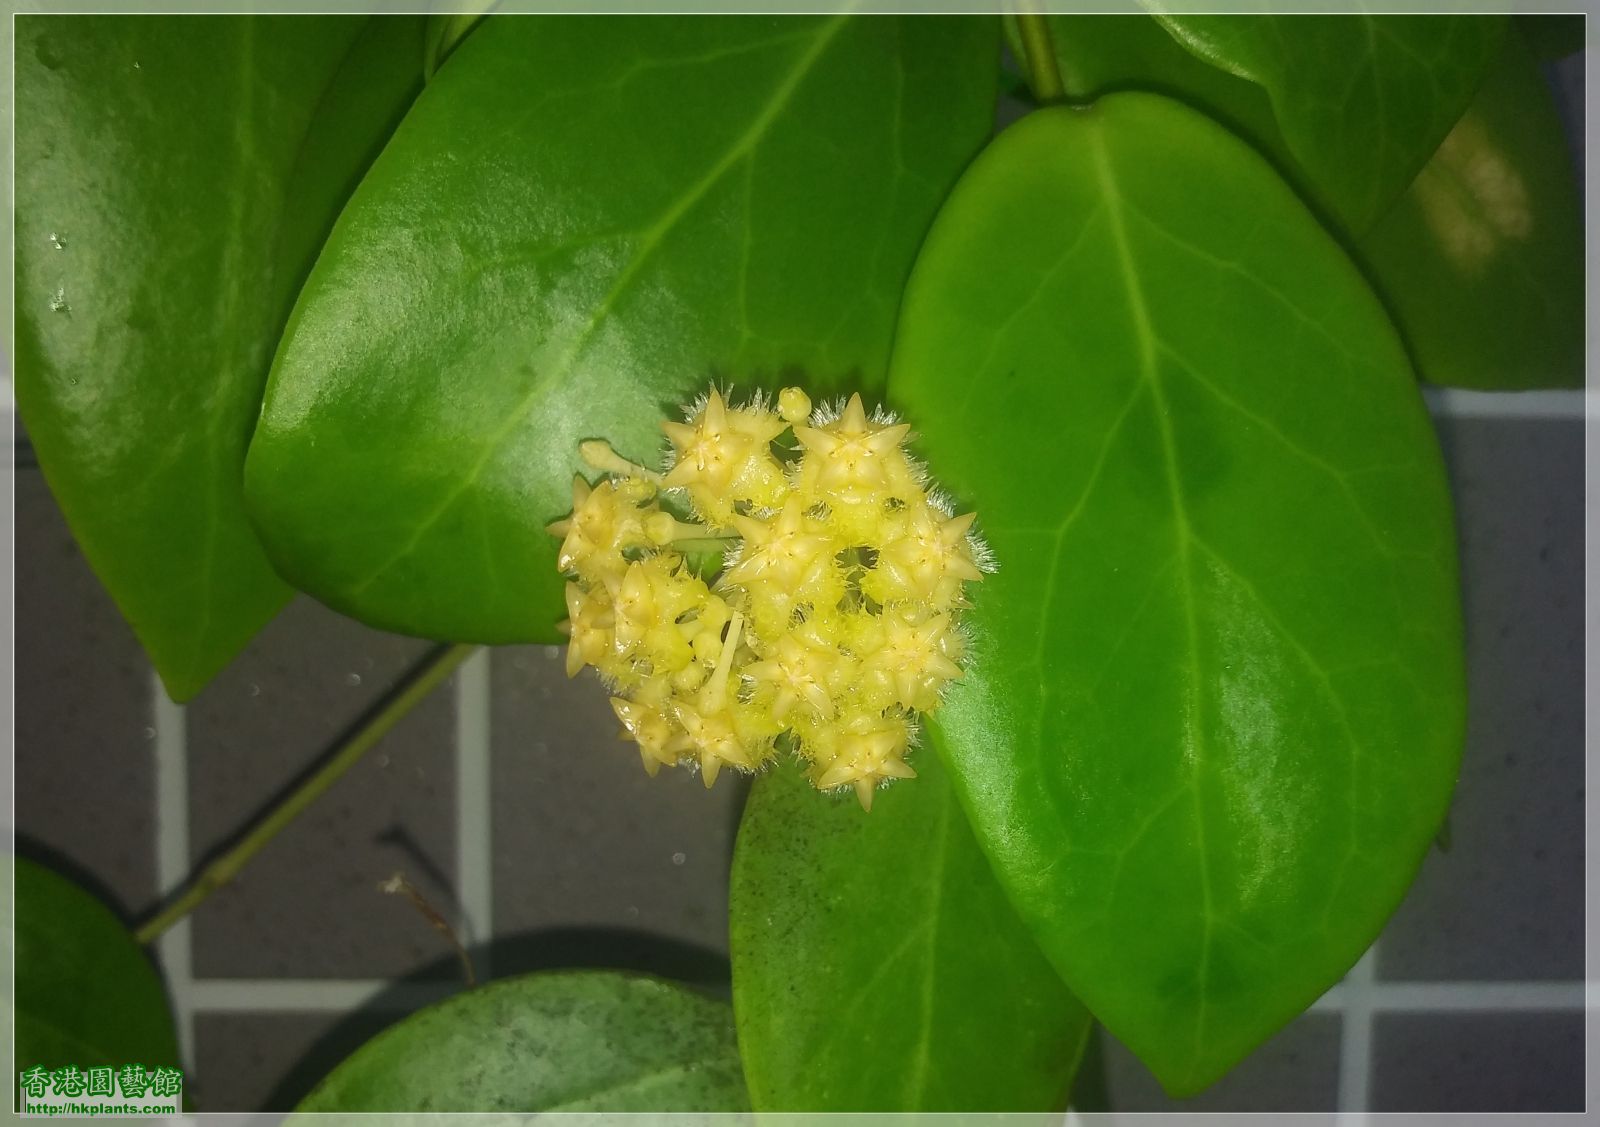 Hoya Mindorensis Yellow Corona-2020-003.jpg